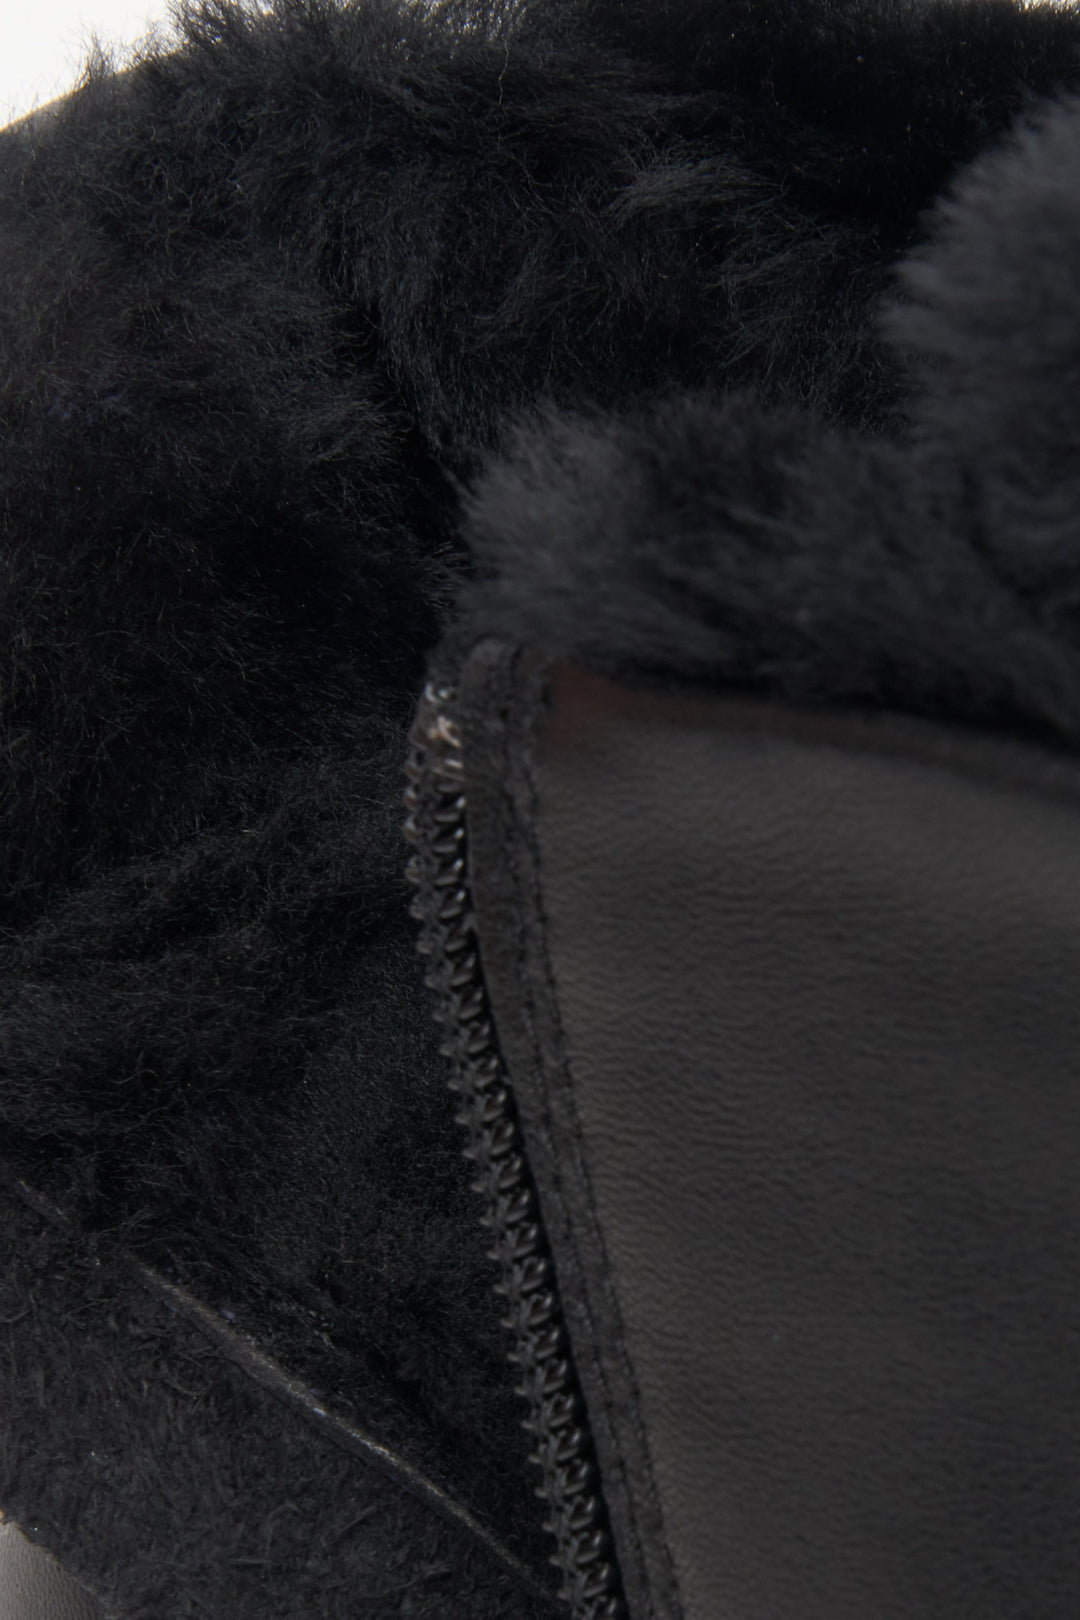 Damskie, zimowe trampki w kolorze czarnym - zbliżenie na miękkie wypełnienie buta.